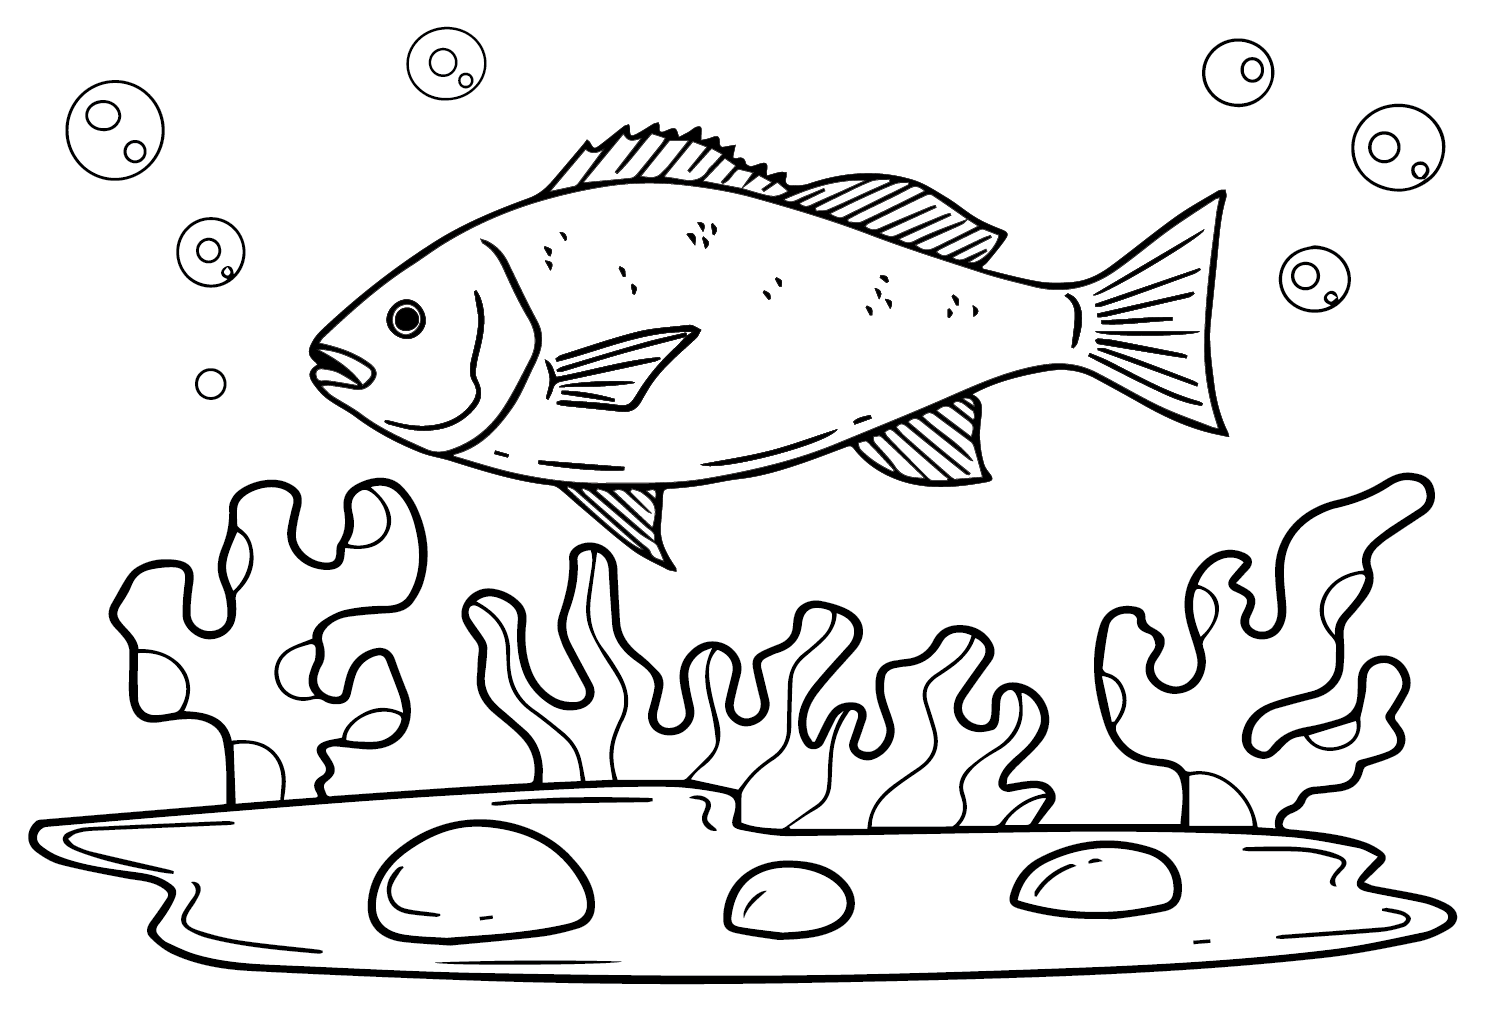 Peixe Pargo de Snapper